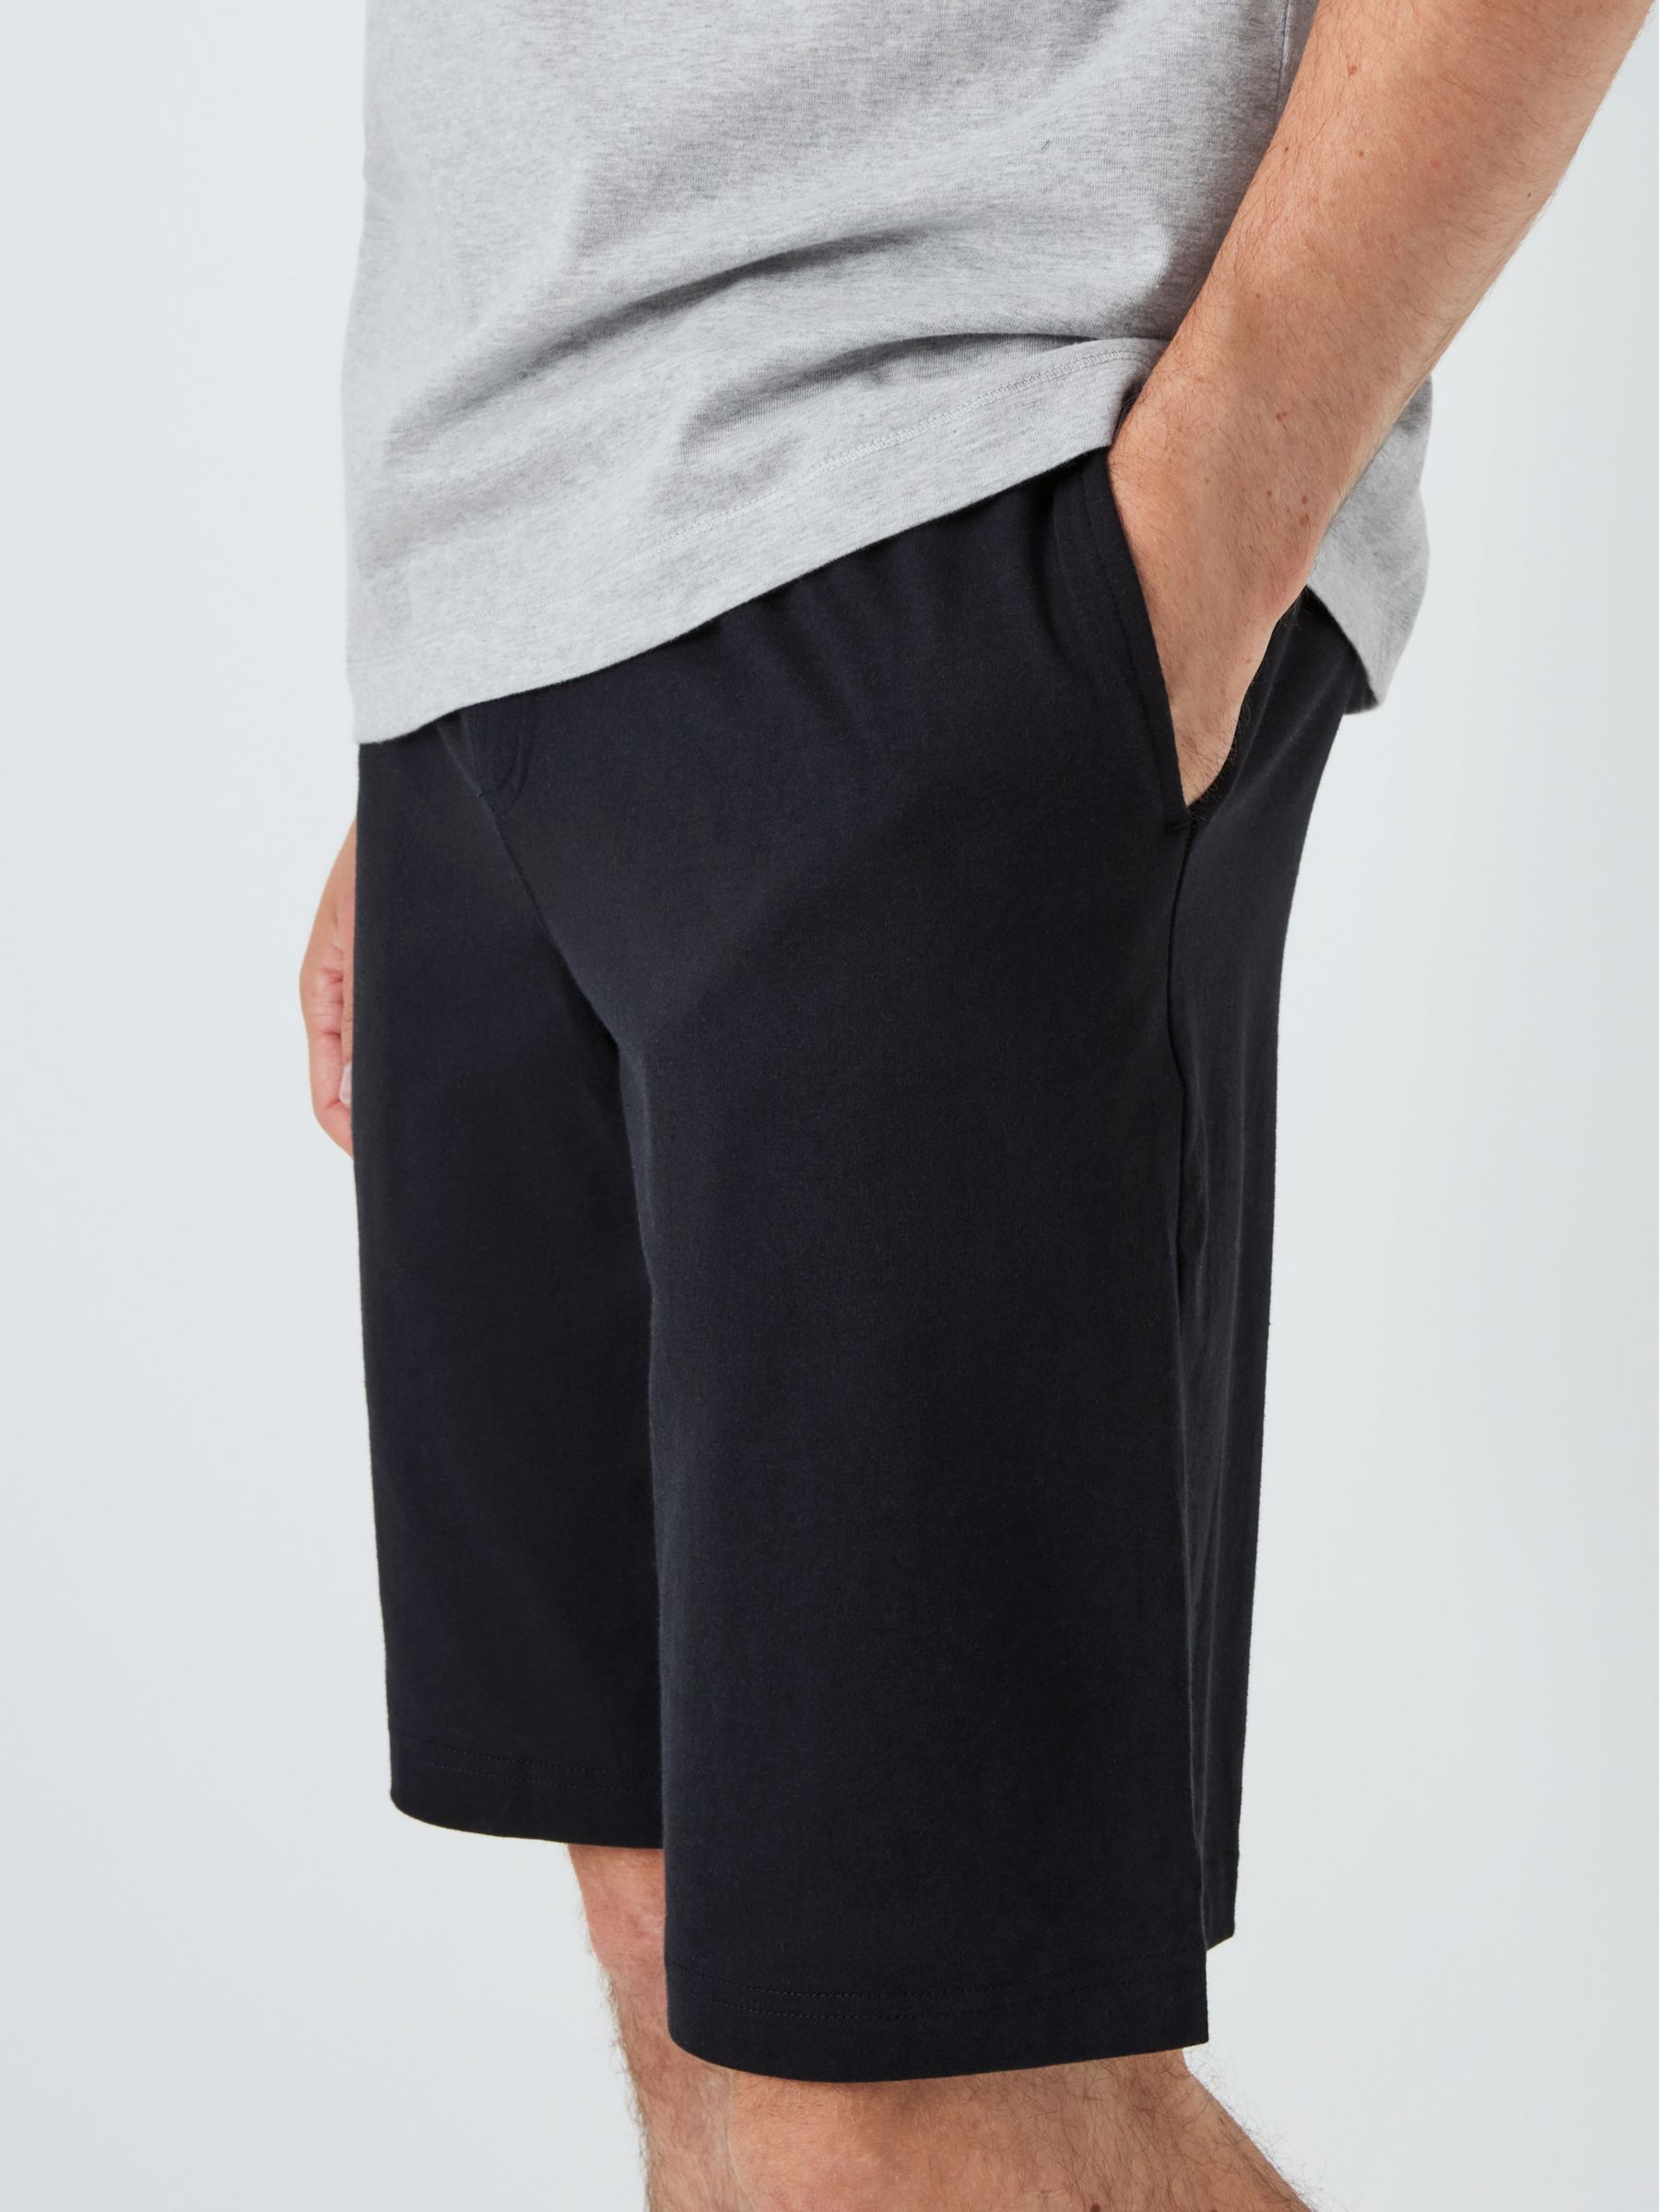 Buy John Lewis ANYDAY Cotton Jersey T-Shirt & Shorts Pyjama Set, Black/Grey Online at johnlewis.com